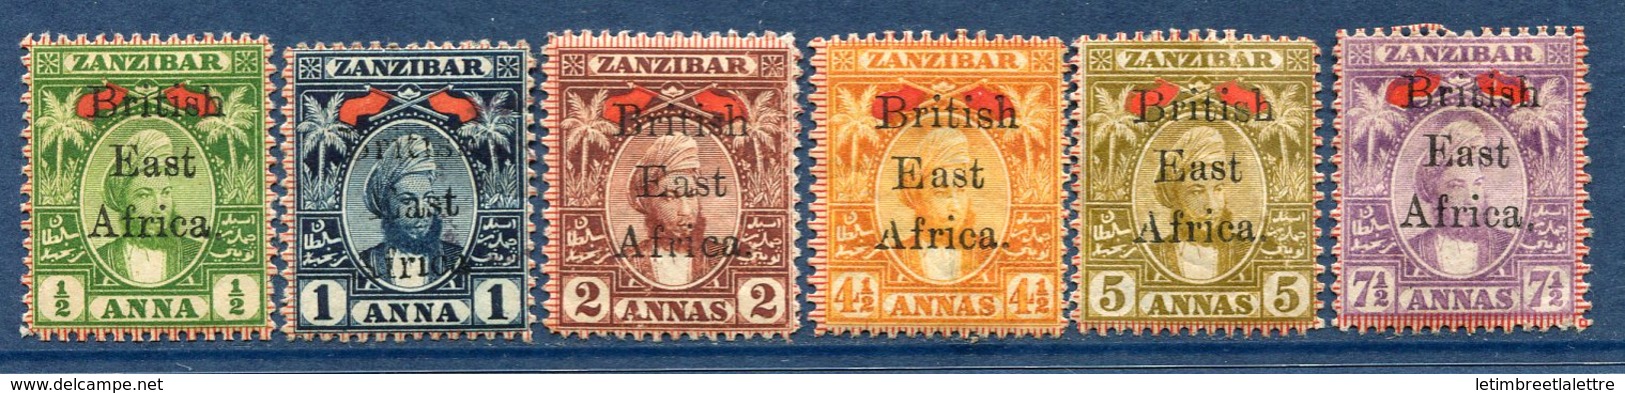 ⭐ Afrique Orientale Britannique - YT N° 84 à 89 * - Neuf Avec Charnière - ( Issus De La Série N° 84 à 91 ) ⭐ - Africa Orientale Britannica